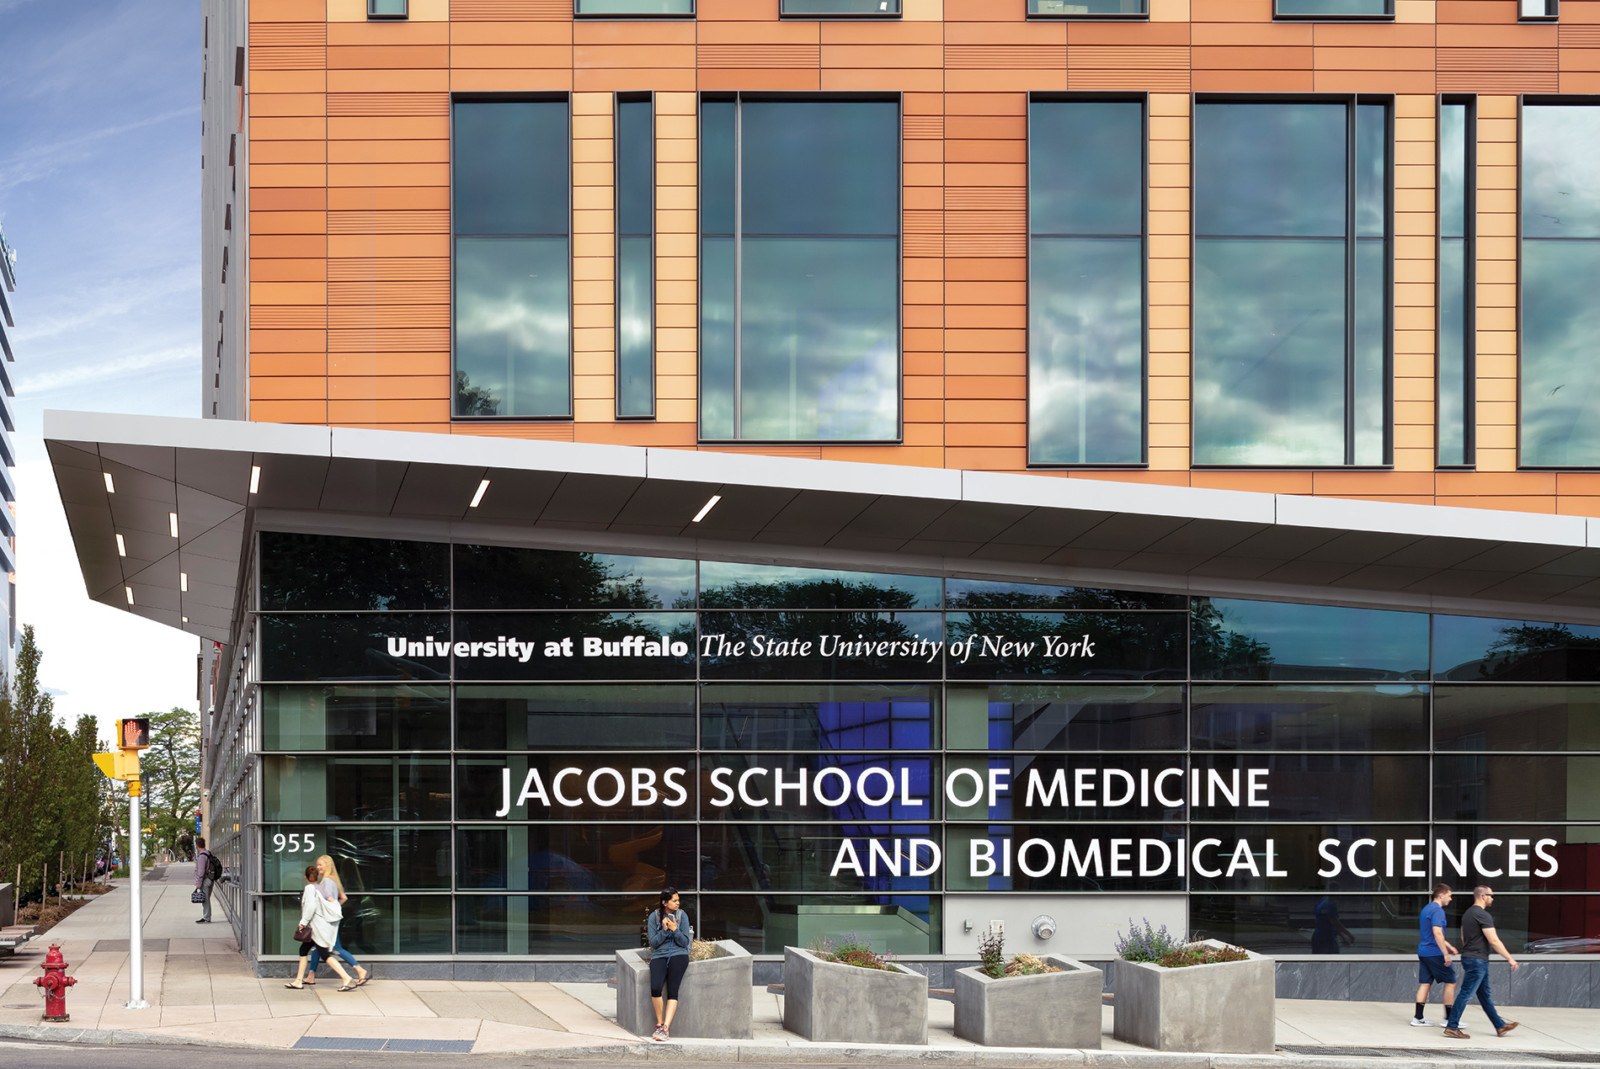 Derved gård arbejdsløshed University at Buffalo Jacobs School of Medicine and Biomedical Sciences -  HOK